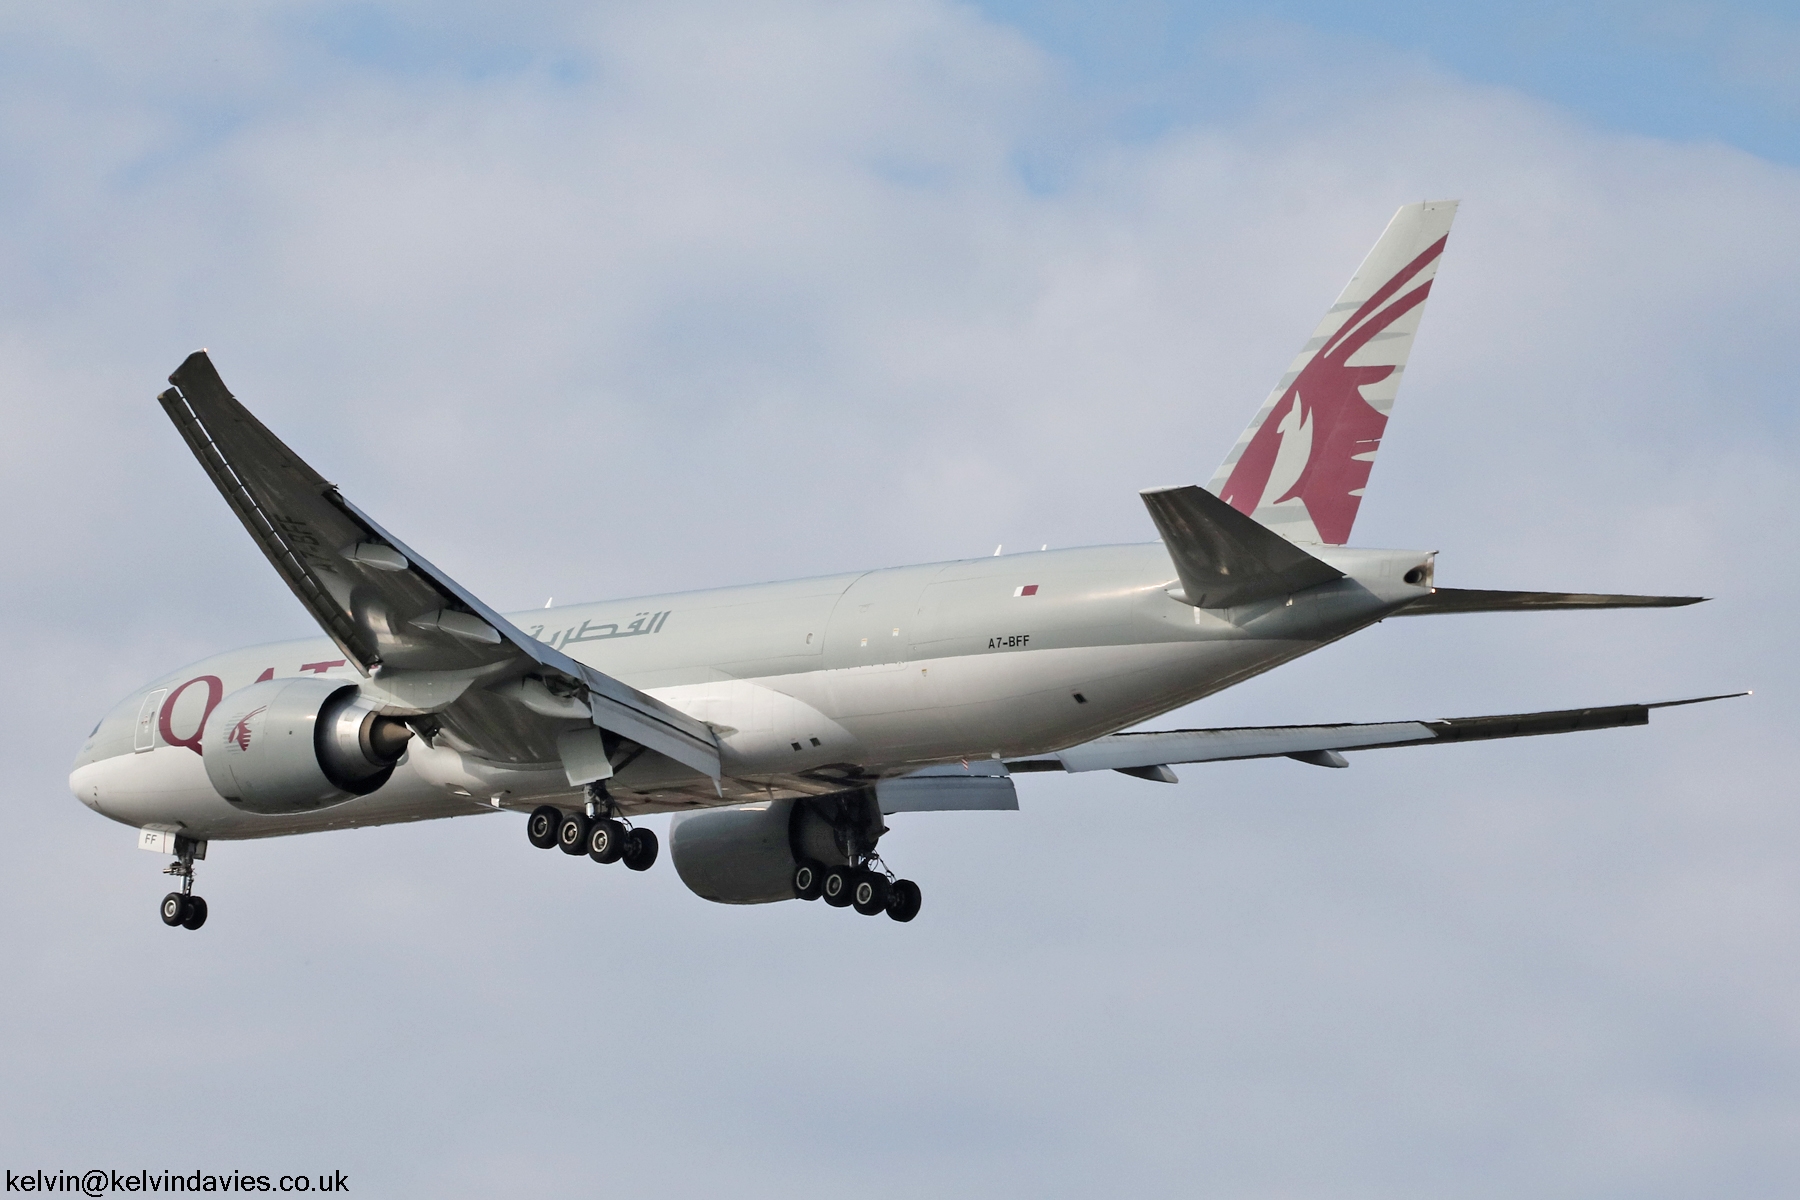 Qatar Airways 777 A7-BFF